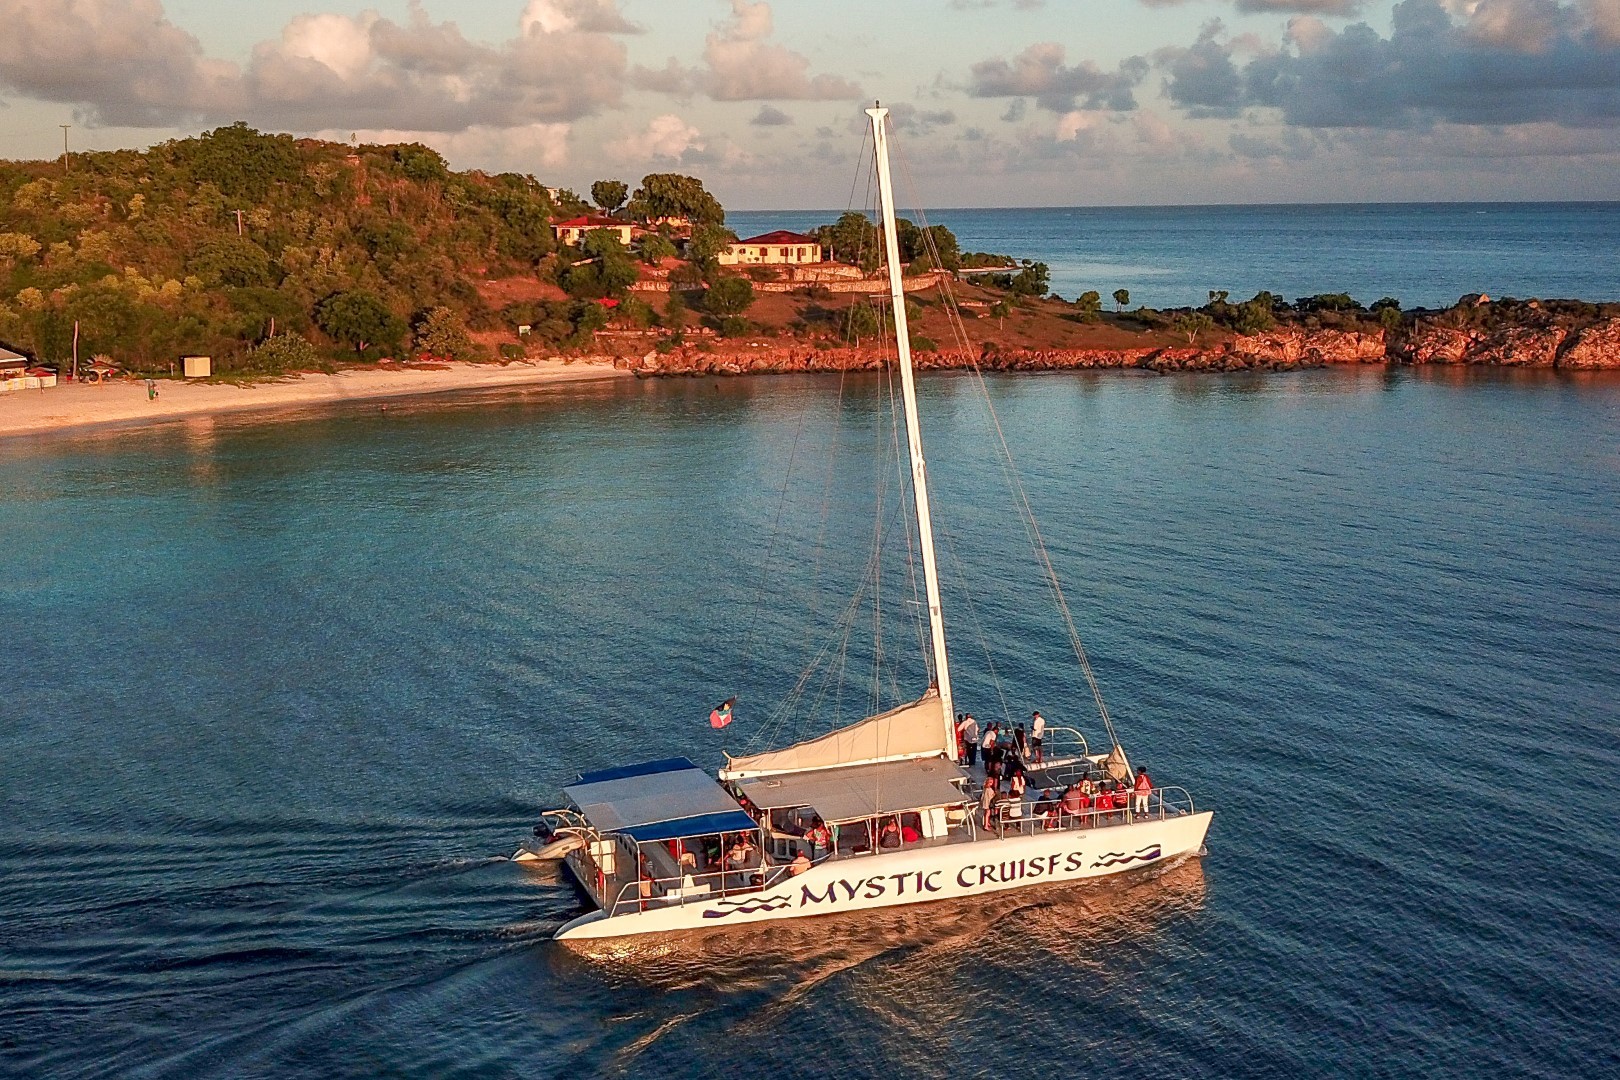 Mystic Cruises Discover Antigua Barbuda